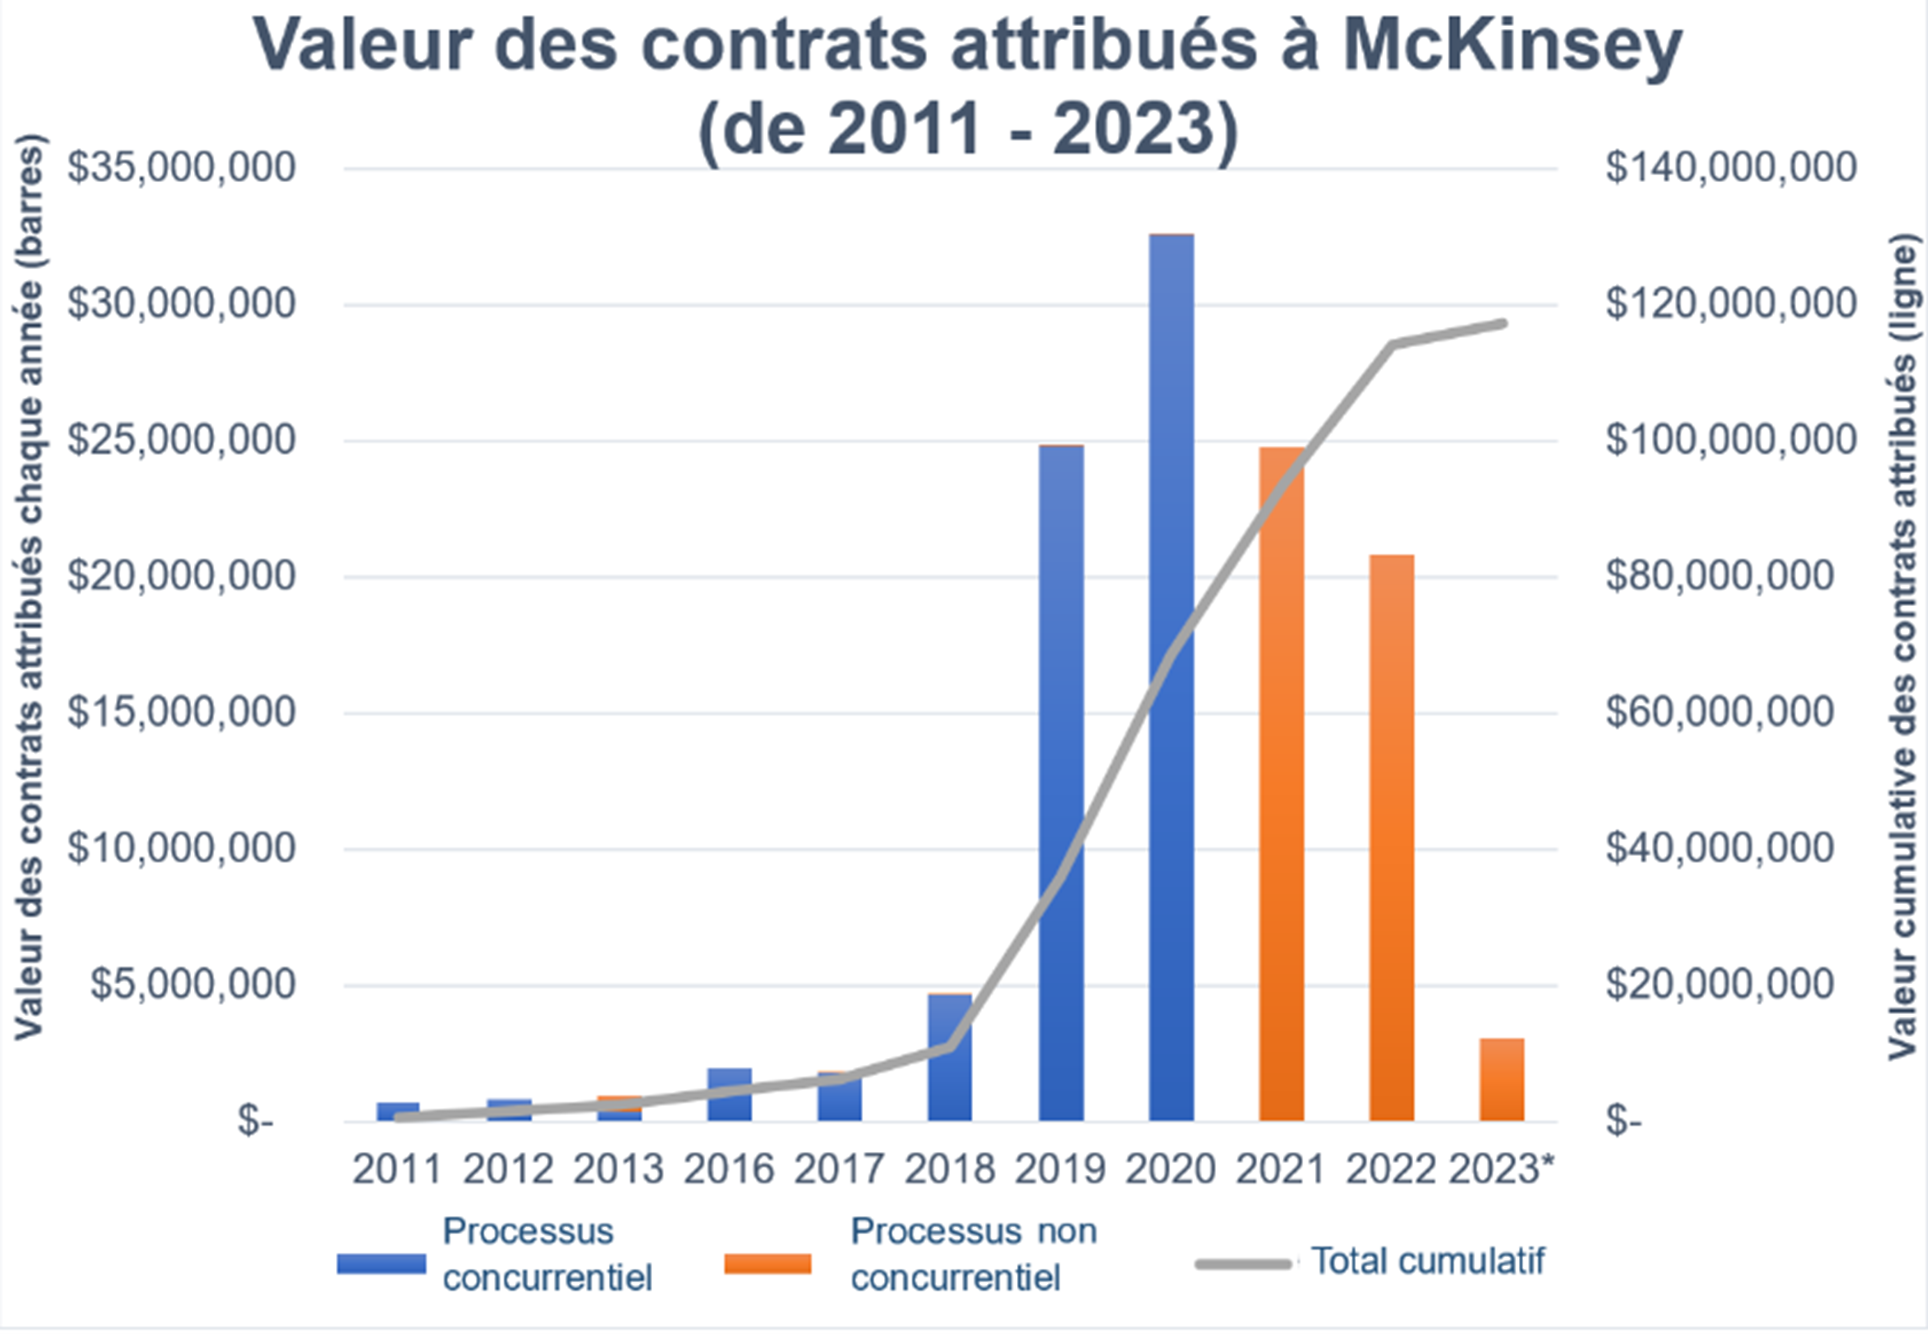 Graphique à barres montrant la valeur des contrats McKinsey entre 2011 et 2023. Longue description ci-dessous.